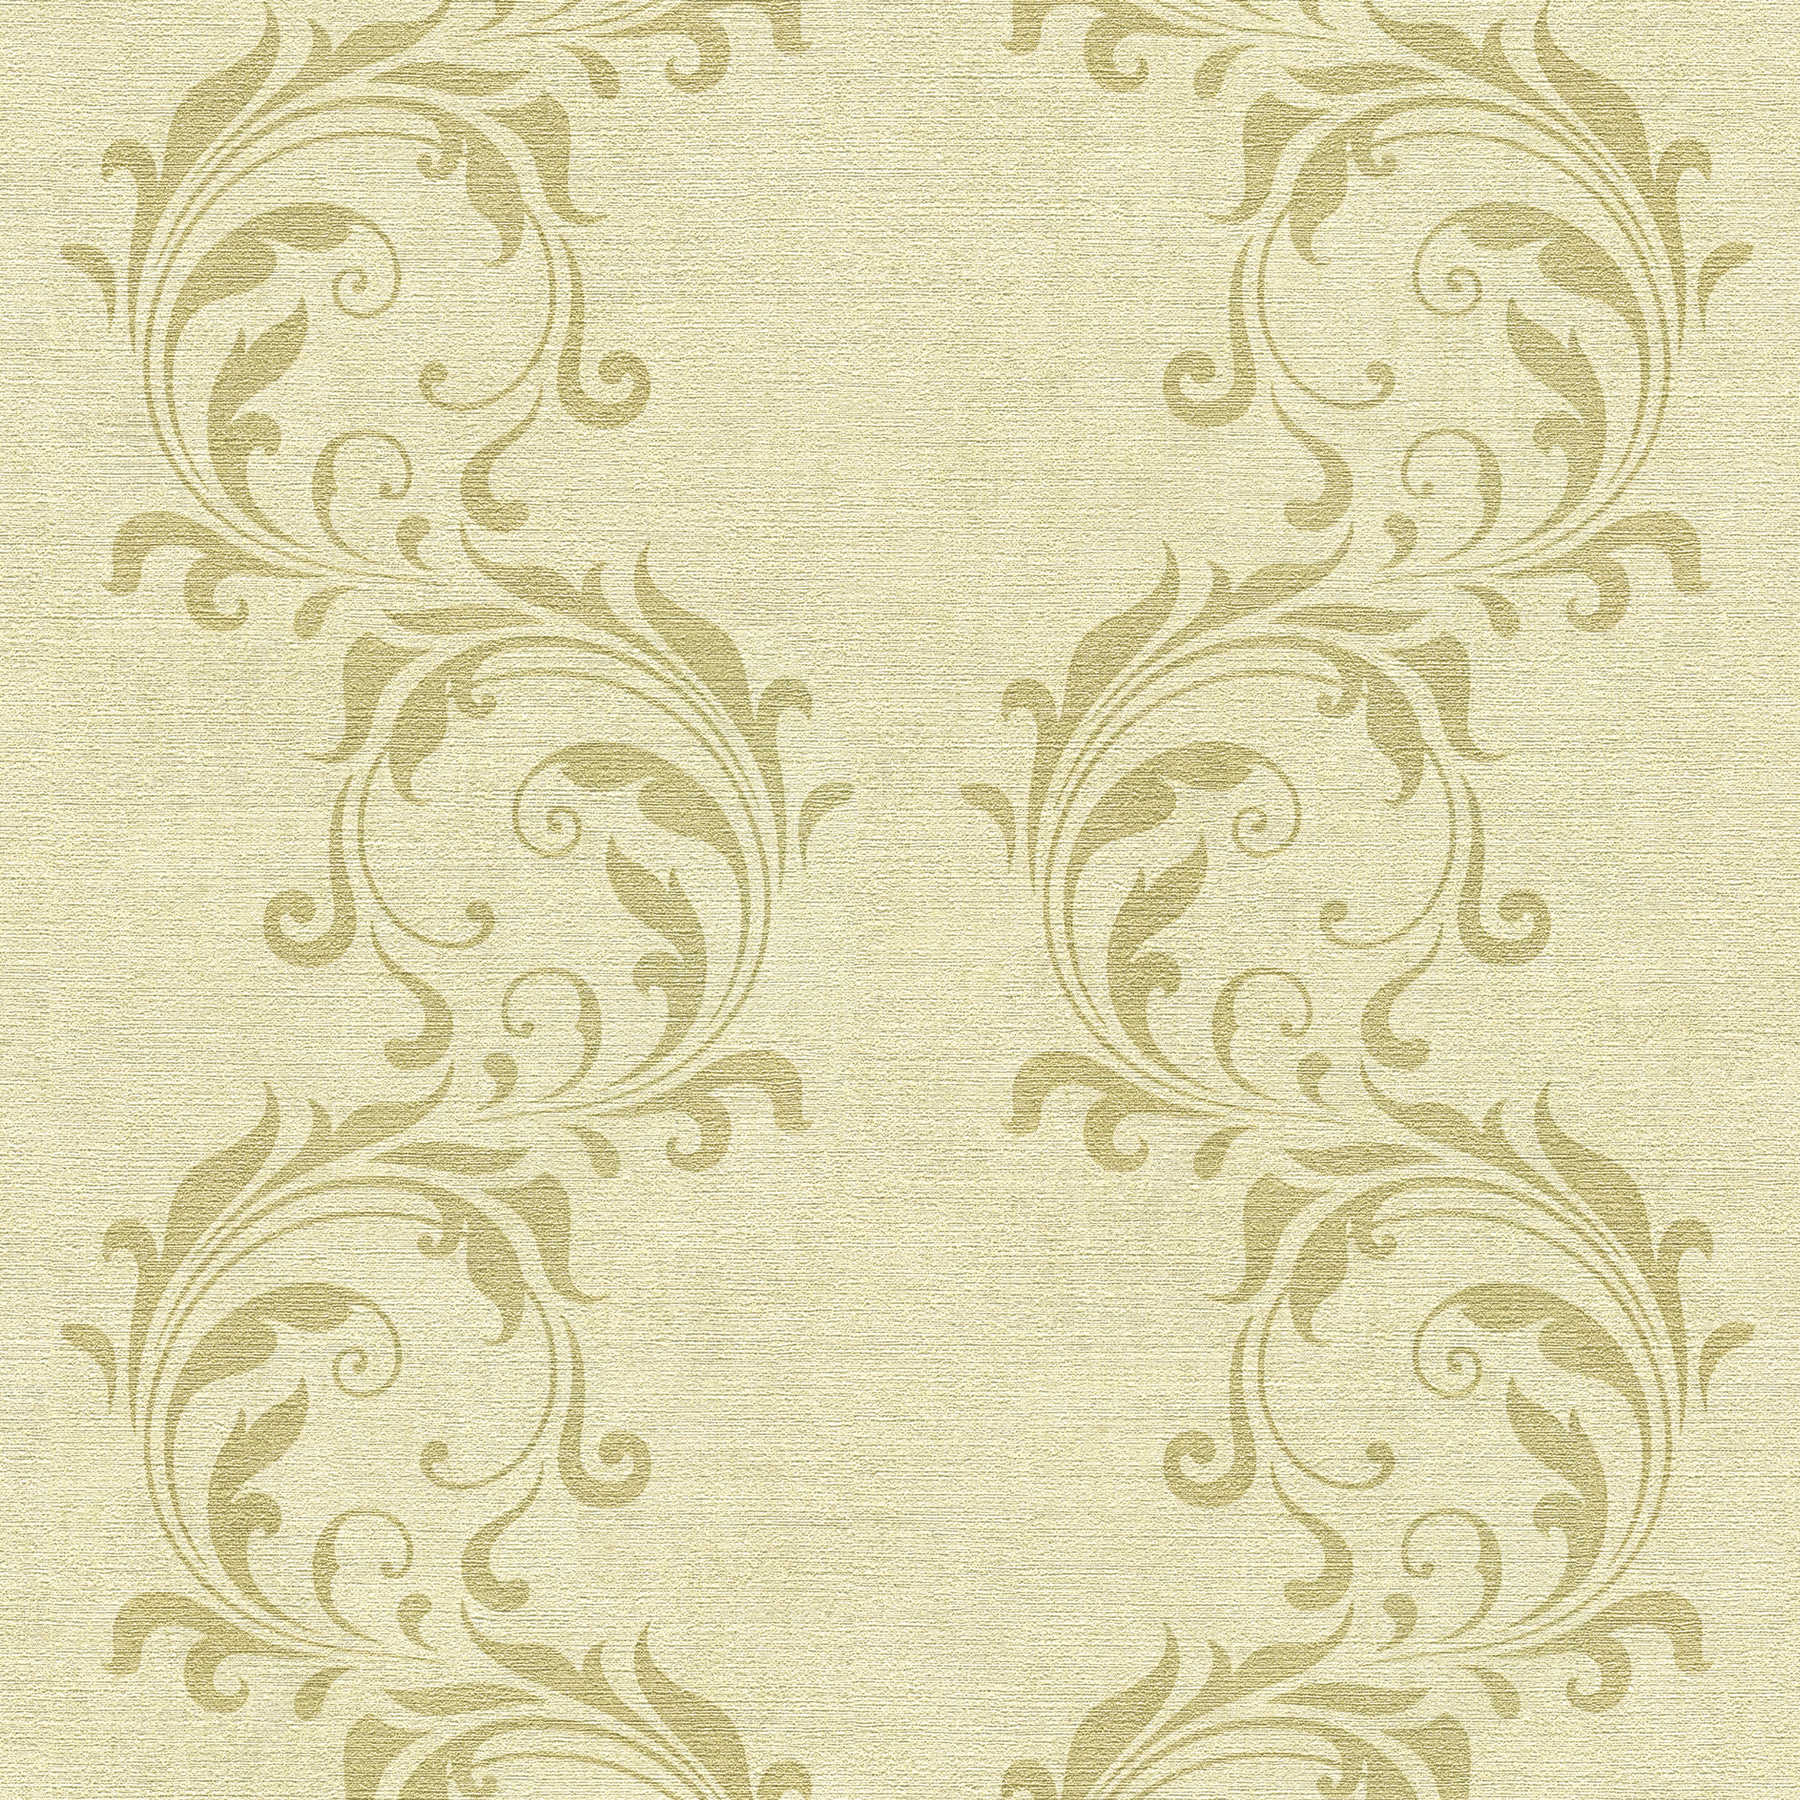 Behang met barok rankenpatroon & structuureffect - beige, metallic
